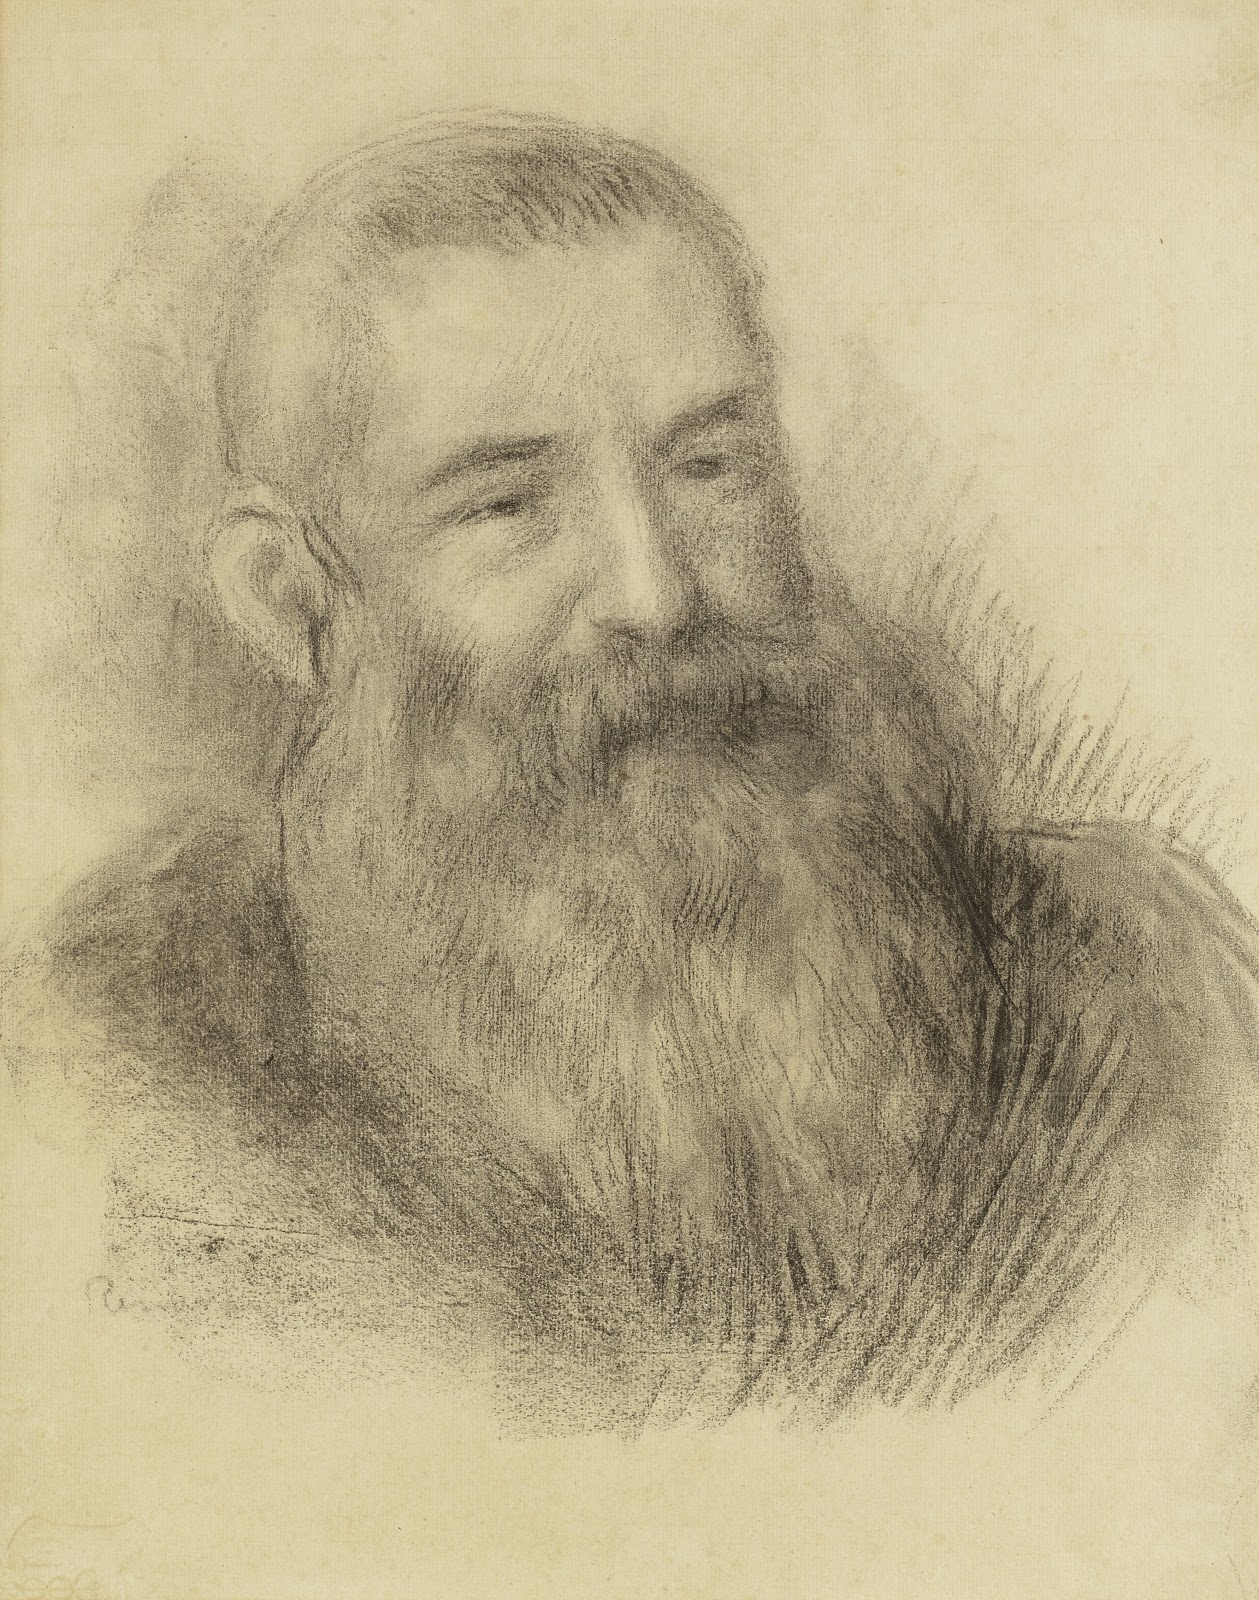 Pierre+Auguste+Renoir-1841-1-19 (854).jpg